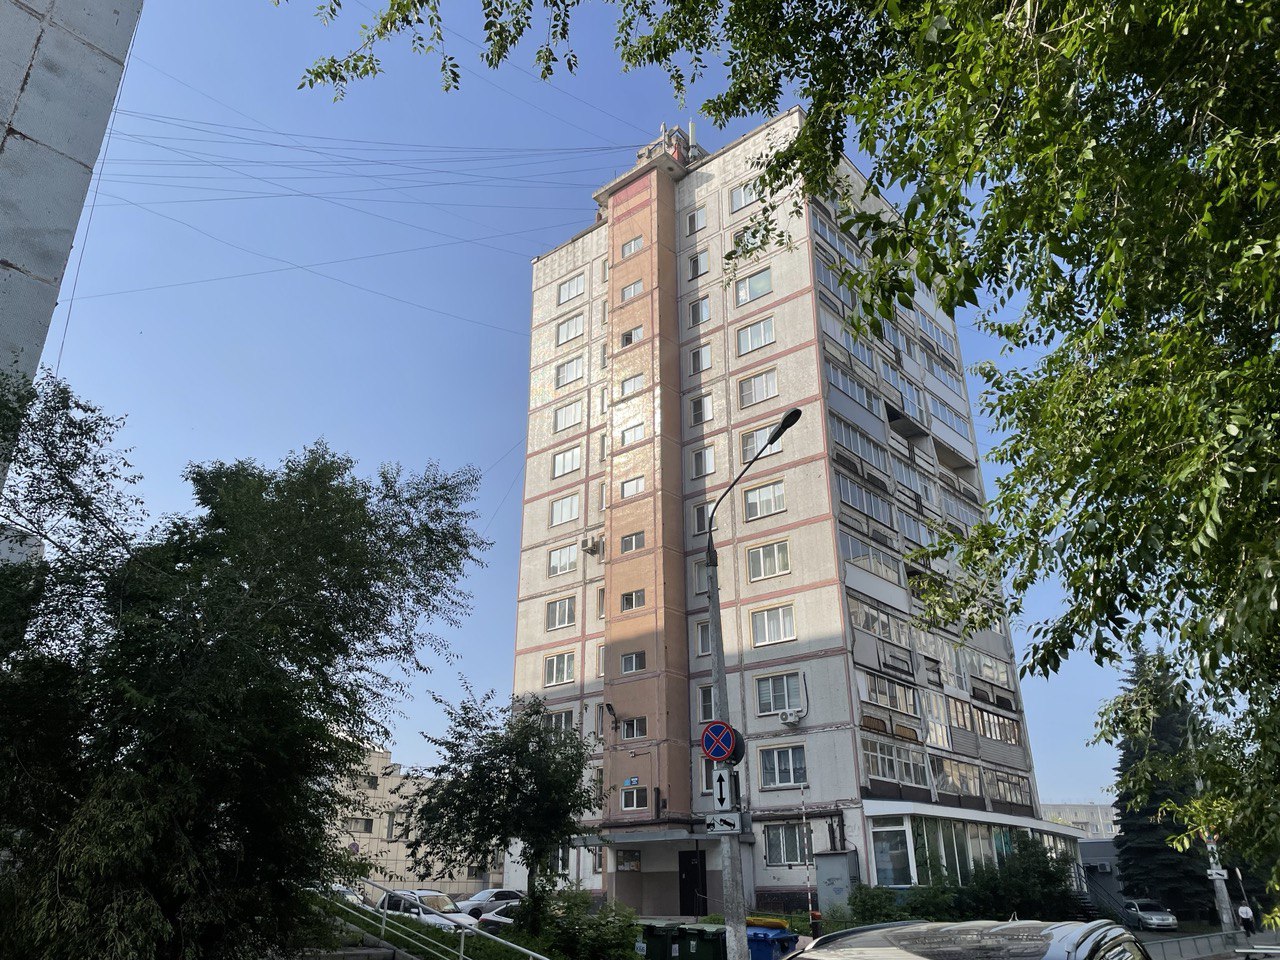 ДОМ.РФ выставил на торги недвижимость под производство или сервис в Новокузнецке